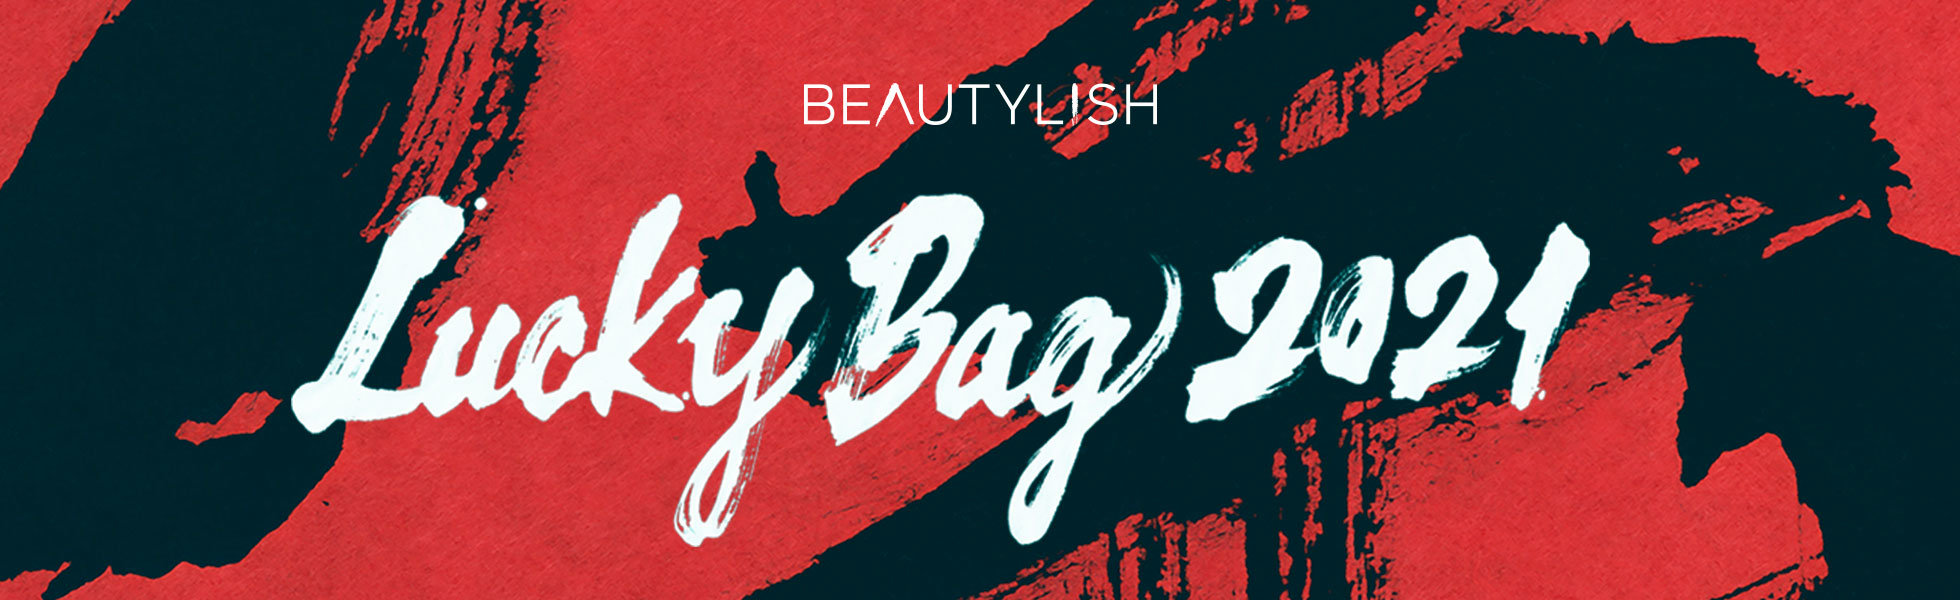 Beautylish Lucky Bag 2021 